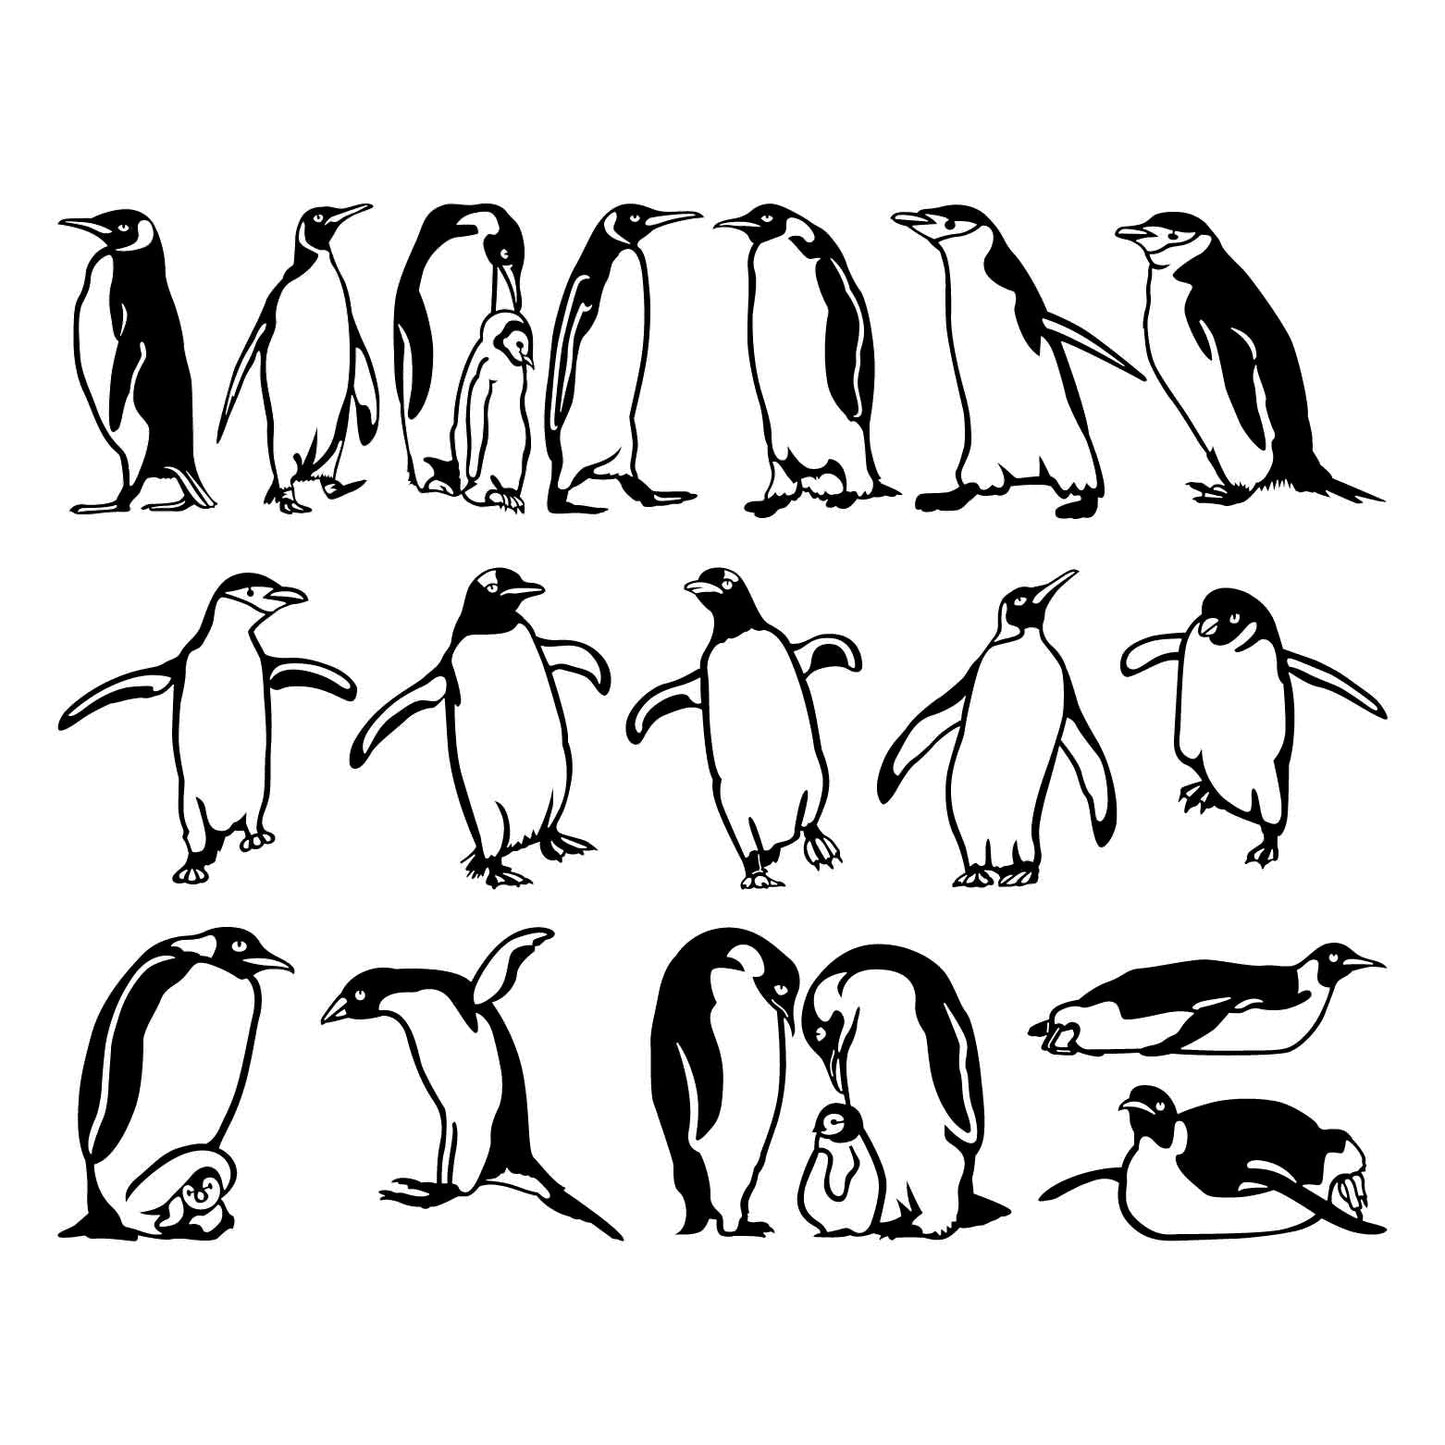 Penguins Aquatic Flightless Birds-DXF files Cut Ready CNC Designs-DXFforCNC.com